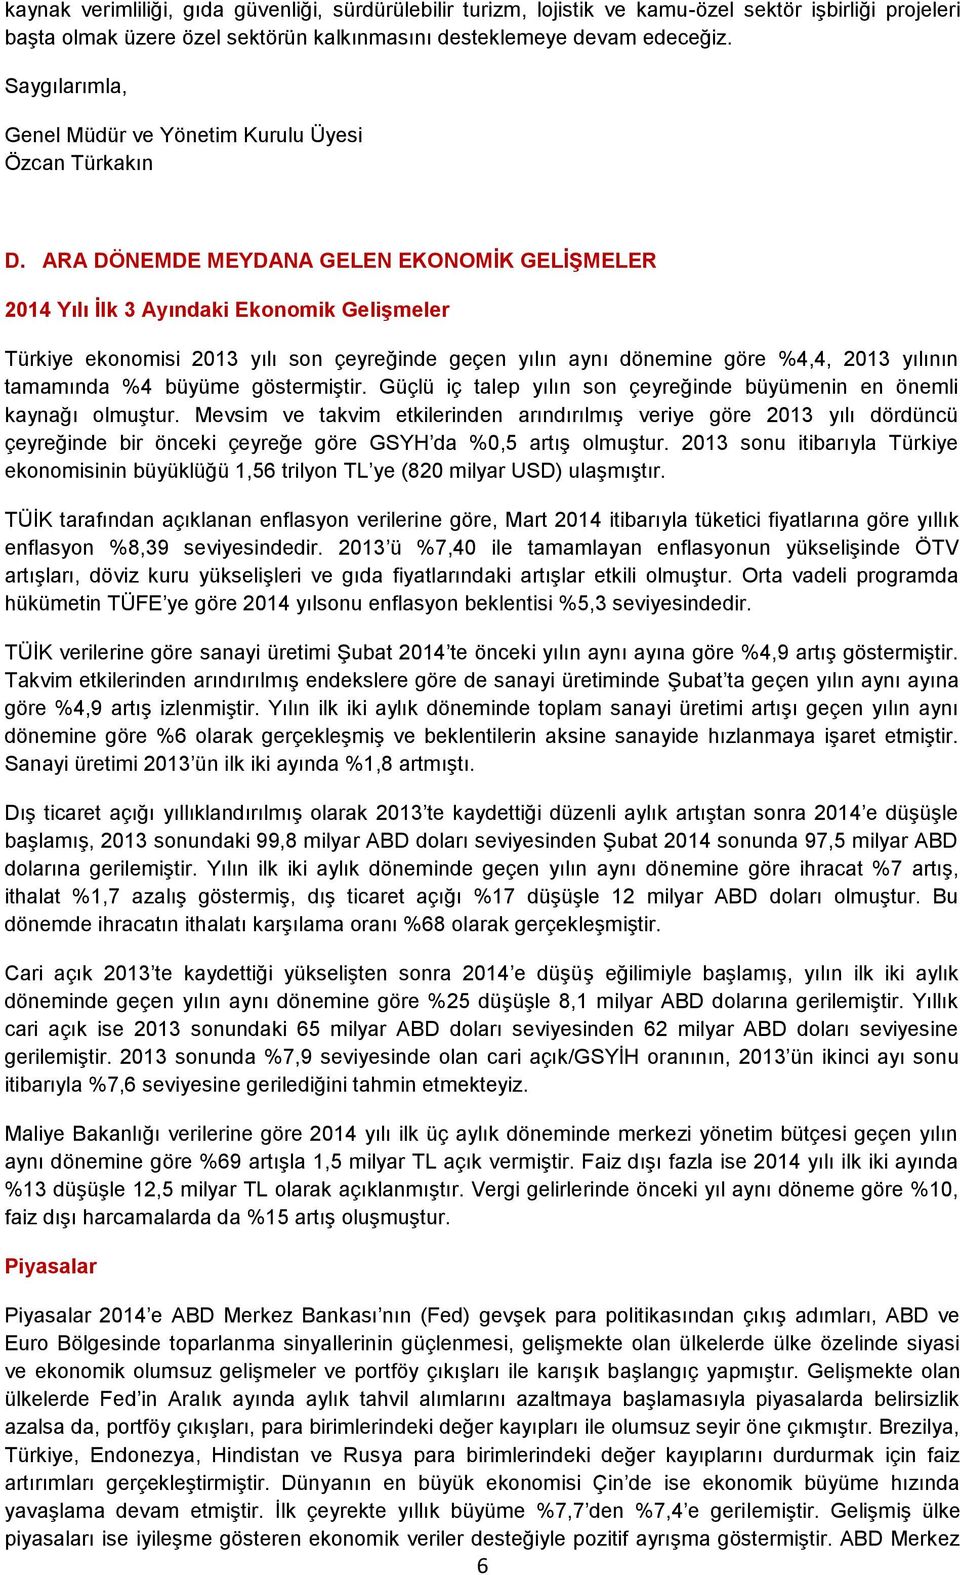 ARA DÖNEMDE MEYDANA GELEN EKONOMİK GELİŞMELER 2014 Yılı İlk 3 Ayındaki Ekonomik Gelişmeler Türkiye ekonomisi 2013 yılı son çeyreğinde geçen yılın aynı dönemine göre %4,4, 2013 yılının tamamında %4